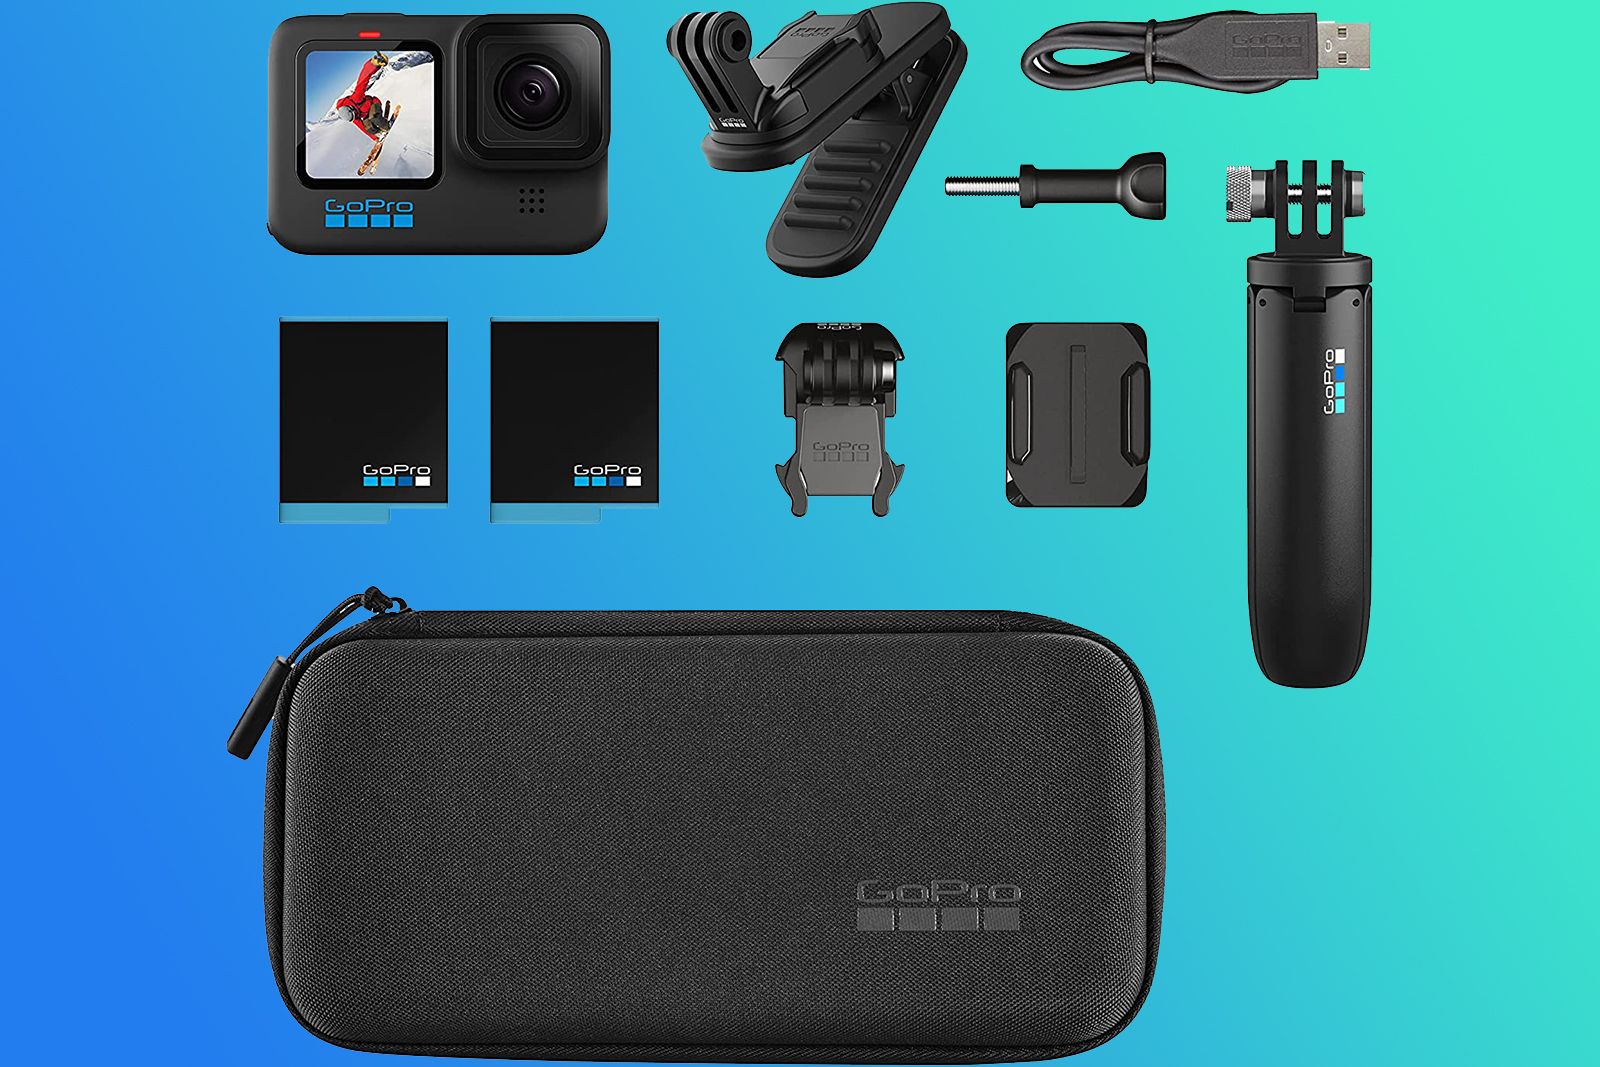 El mejor Kit de accesorios para GoPro (+7 IMPRESCINDIBLES)